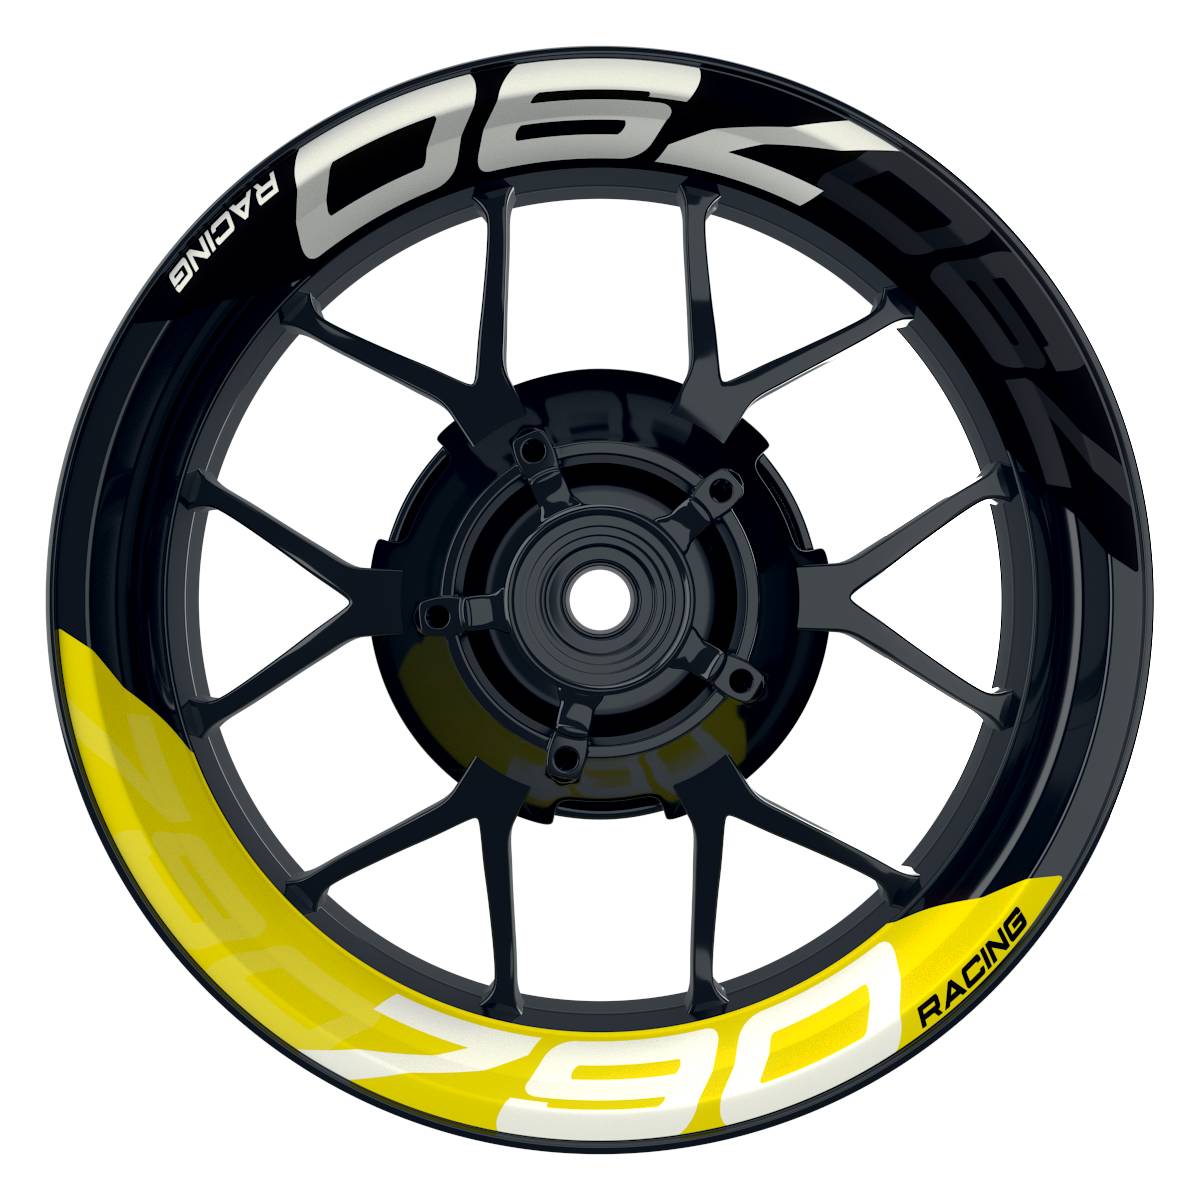 Wheelsticker Felgenaufkleber KTM Racing 790 halb halb V2 schwarz gelb Frontansicht